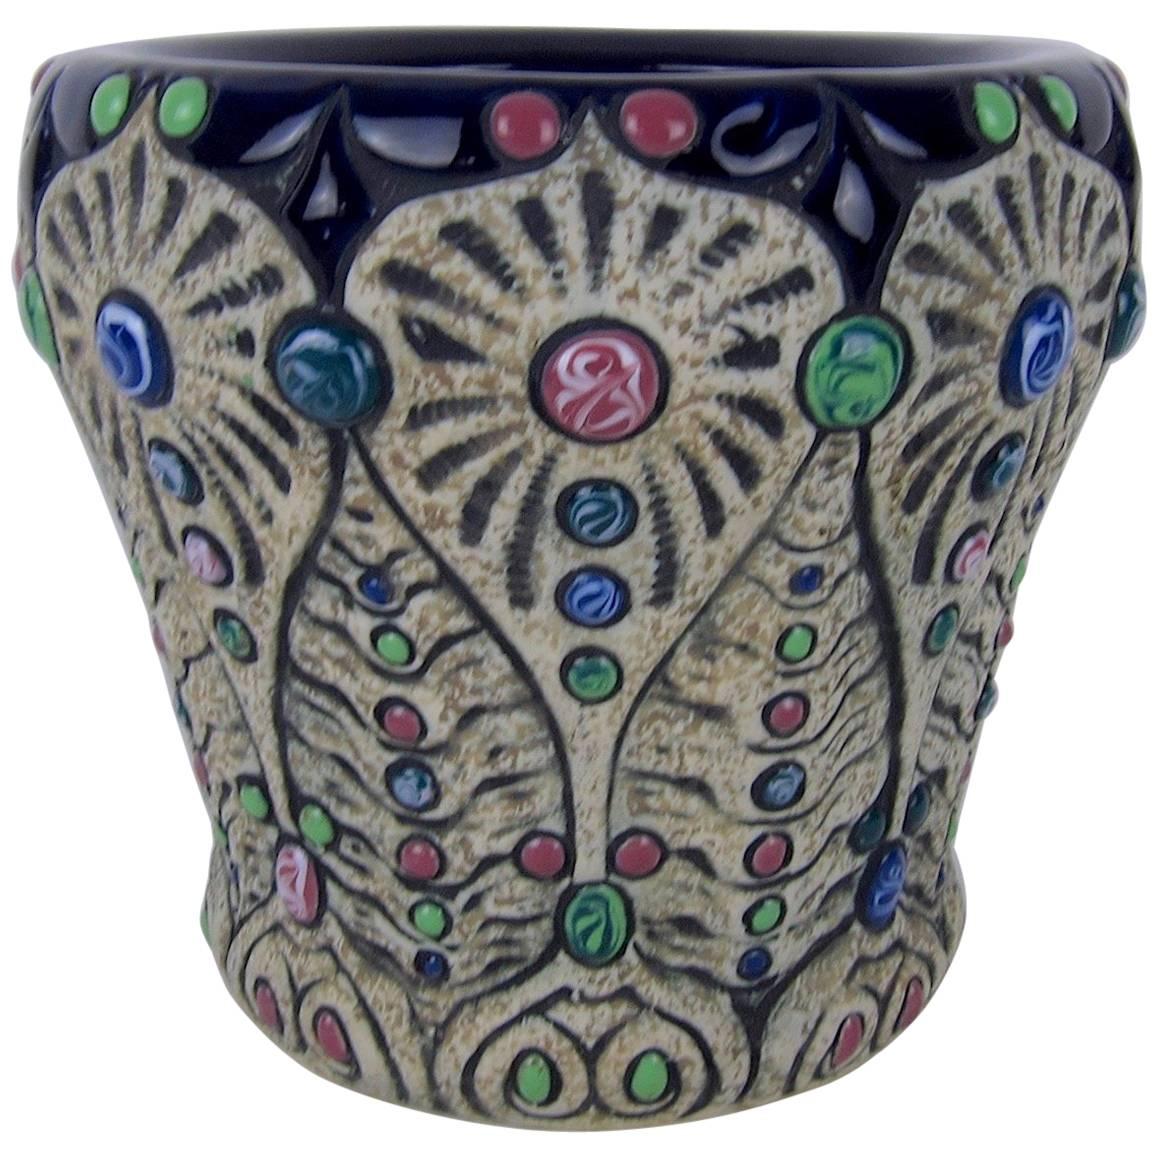 Art Nouveau Amphora Pottery Cachepot Planter with Polychrome Cabochon Jewels